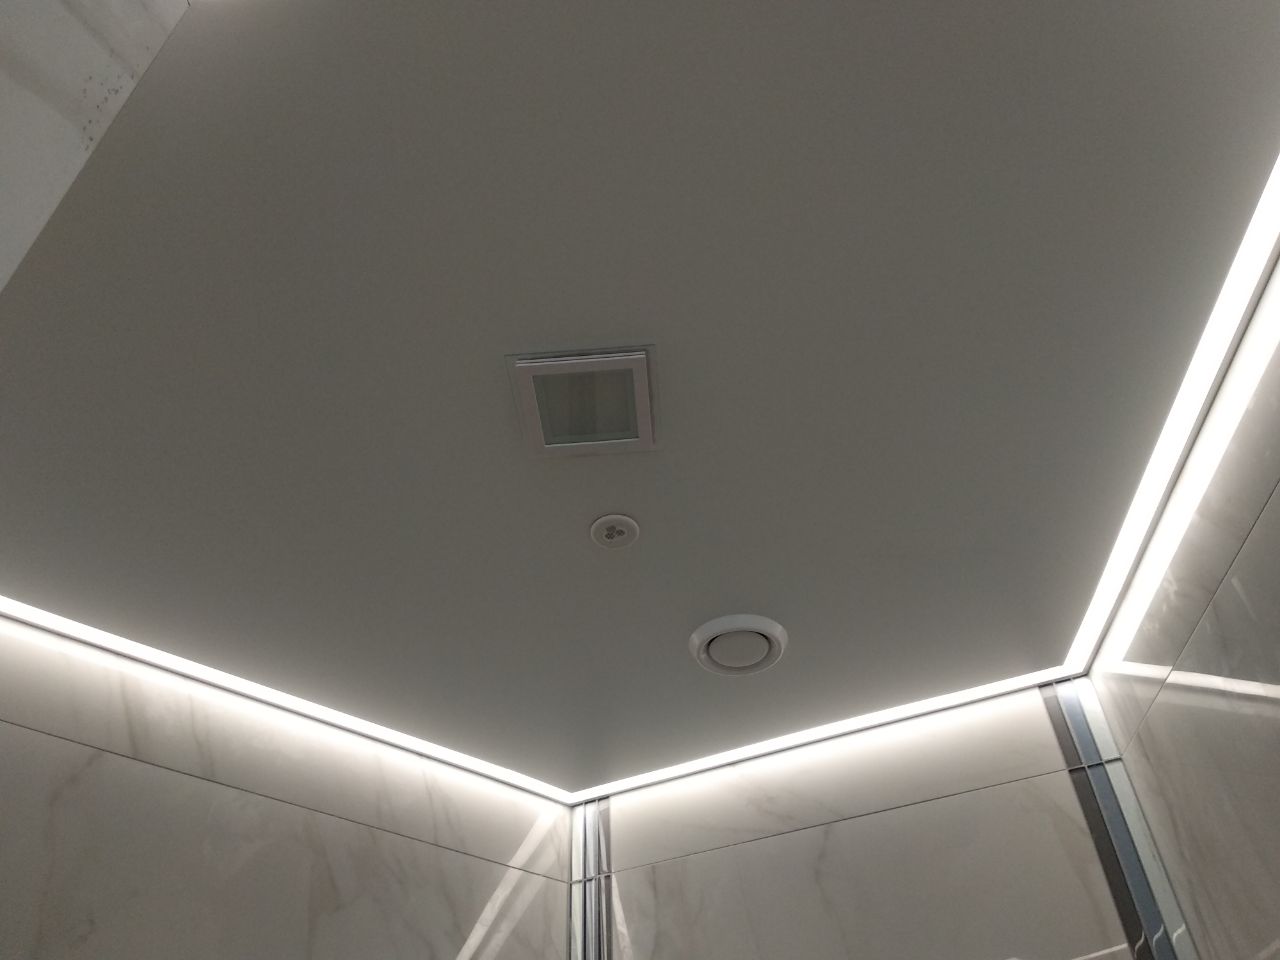 Контурный потолок с подсветкой. Контурный профиль (Contour) для натяжных потолков. Контурная подсветка натяжного потолка. Натяжные потолки с подсветкой. Контурная подсветка натяжного потолка по периметру.